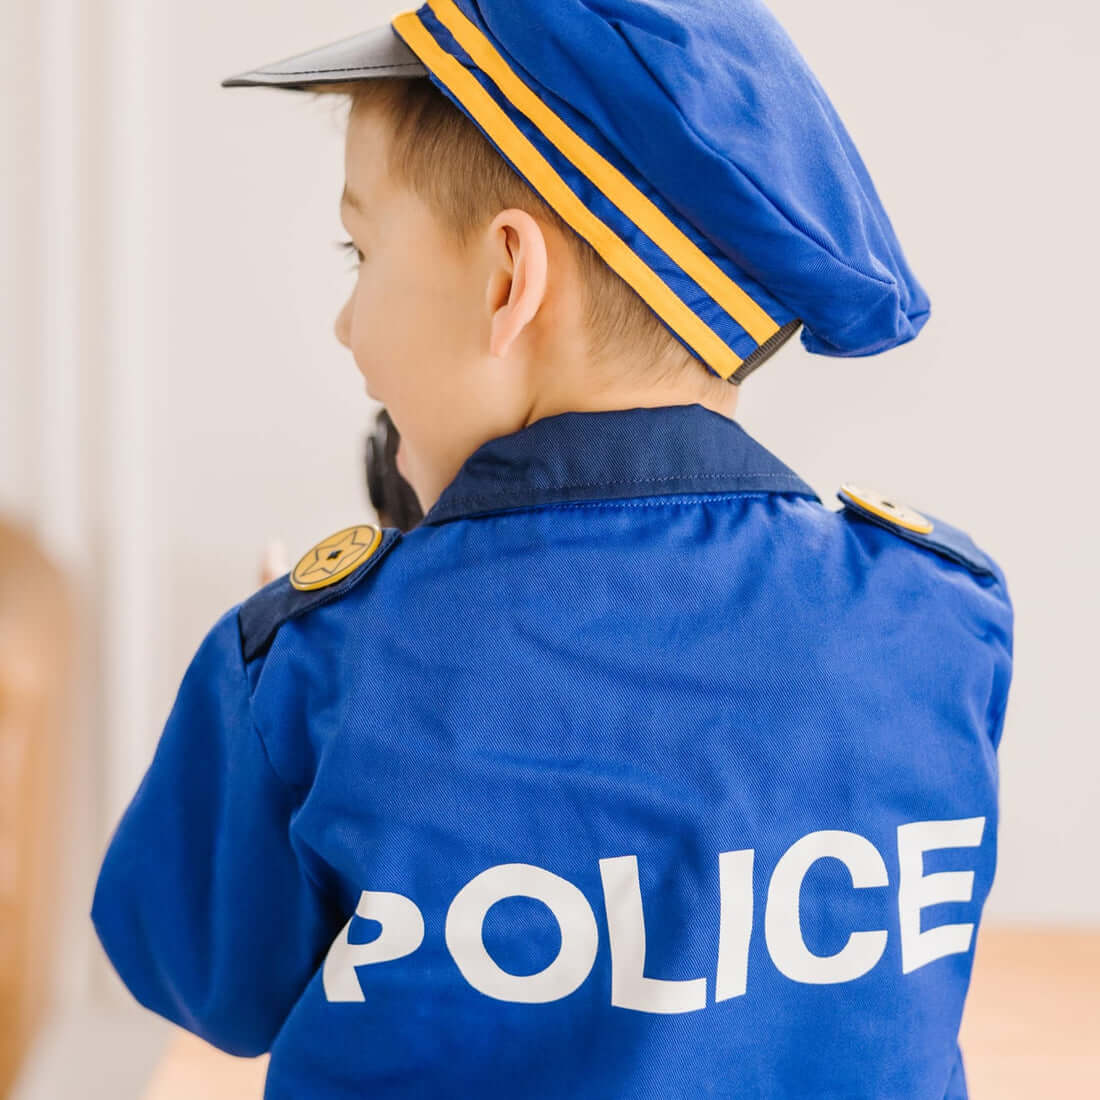 Déguisement enfant policier 8 à 10 ans